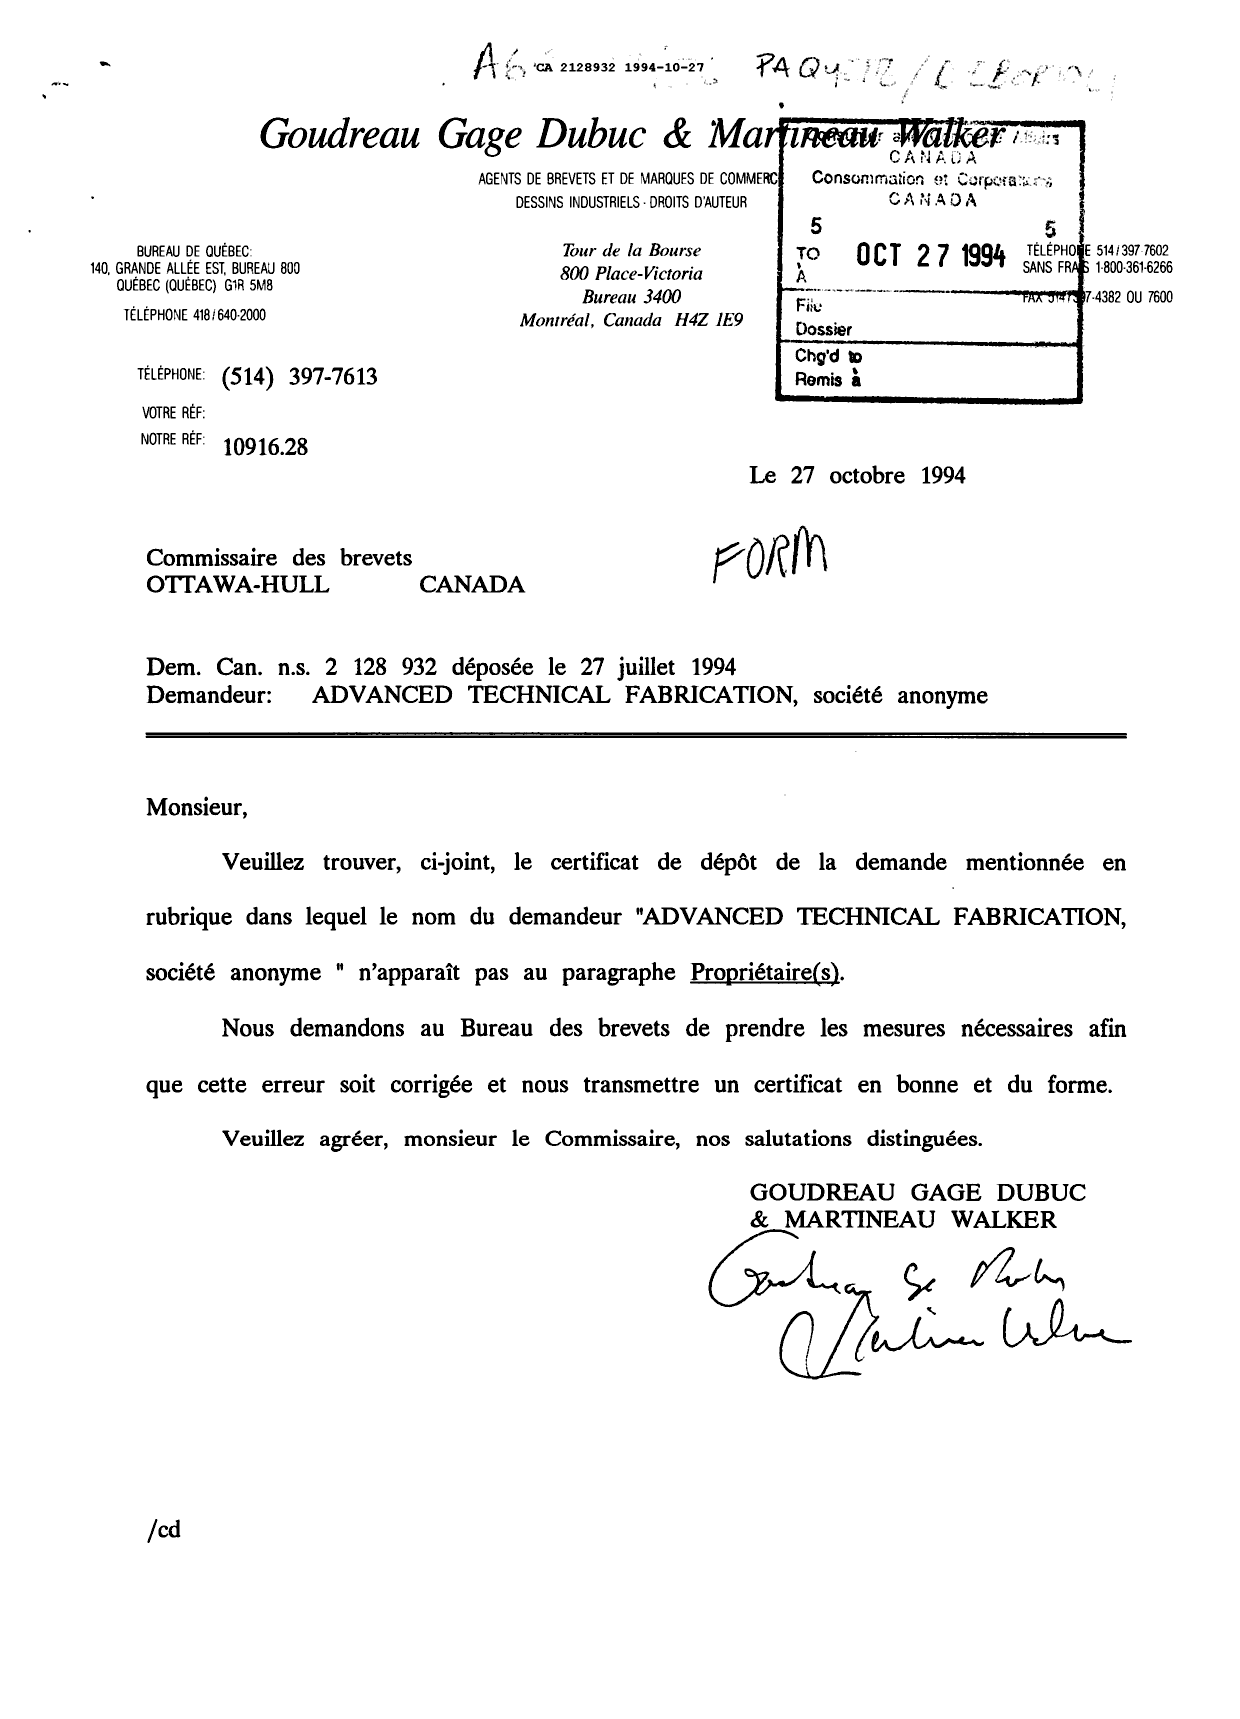 Document de brevet canadien 2128932. Correspondance reliée aux formalités 19941027. Image 1 de 1